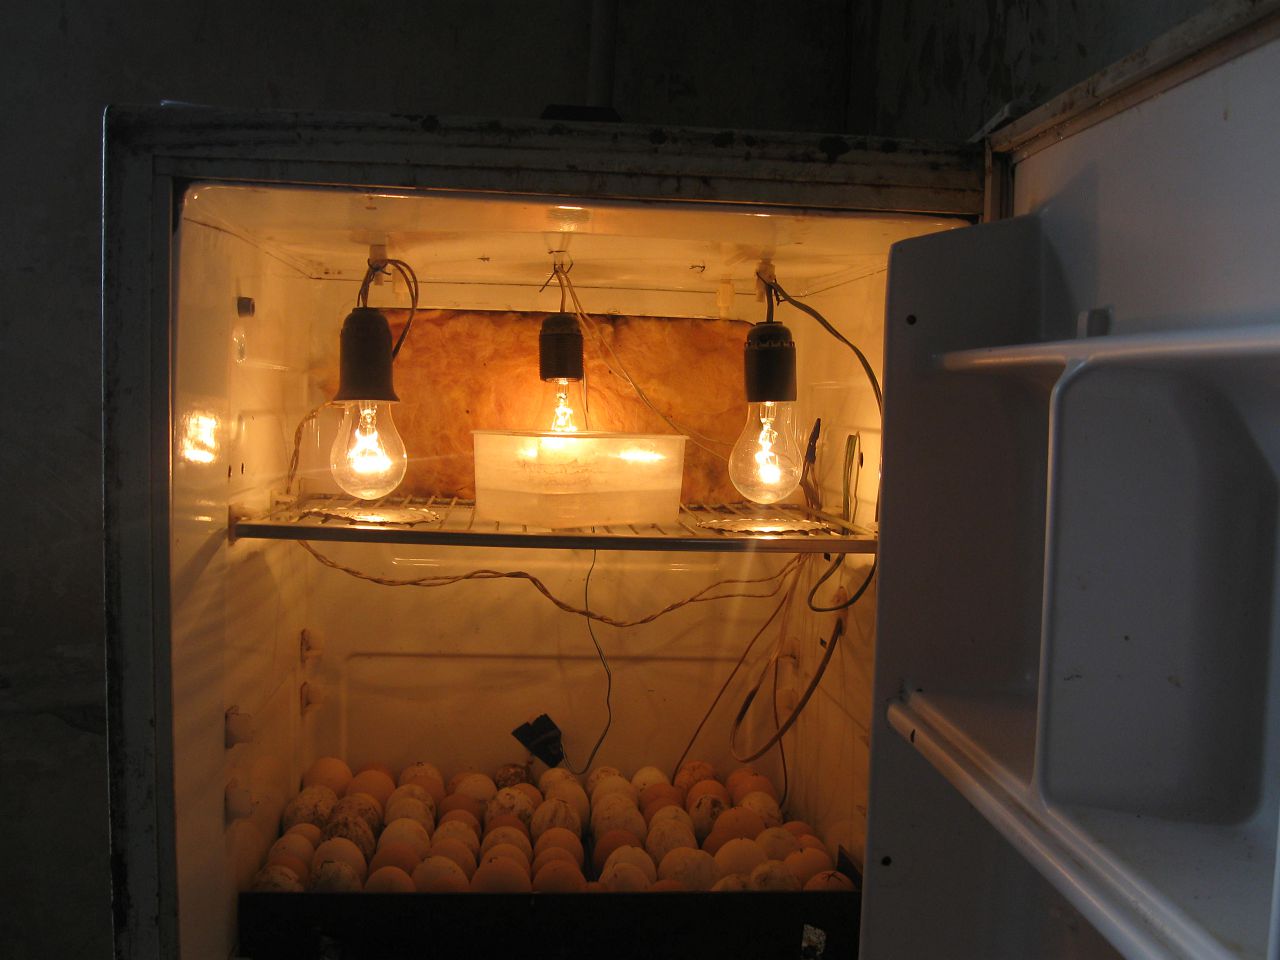 Зберігання інкубаційних яєць перед закладкою в інкубатор умови